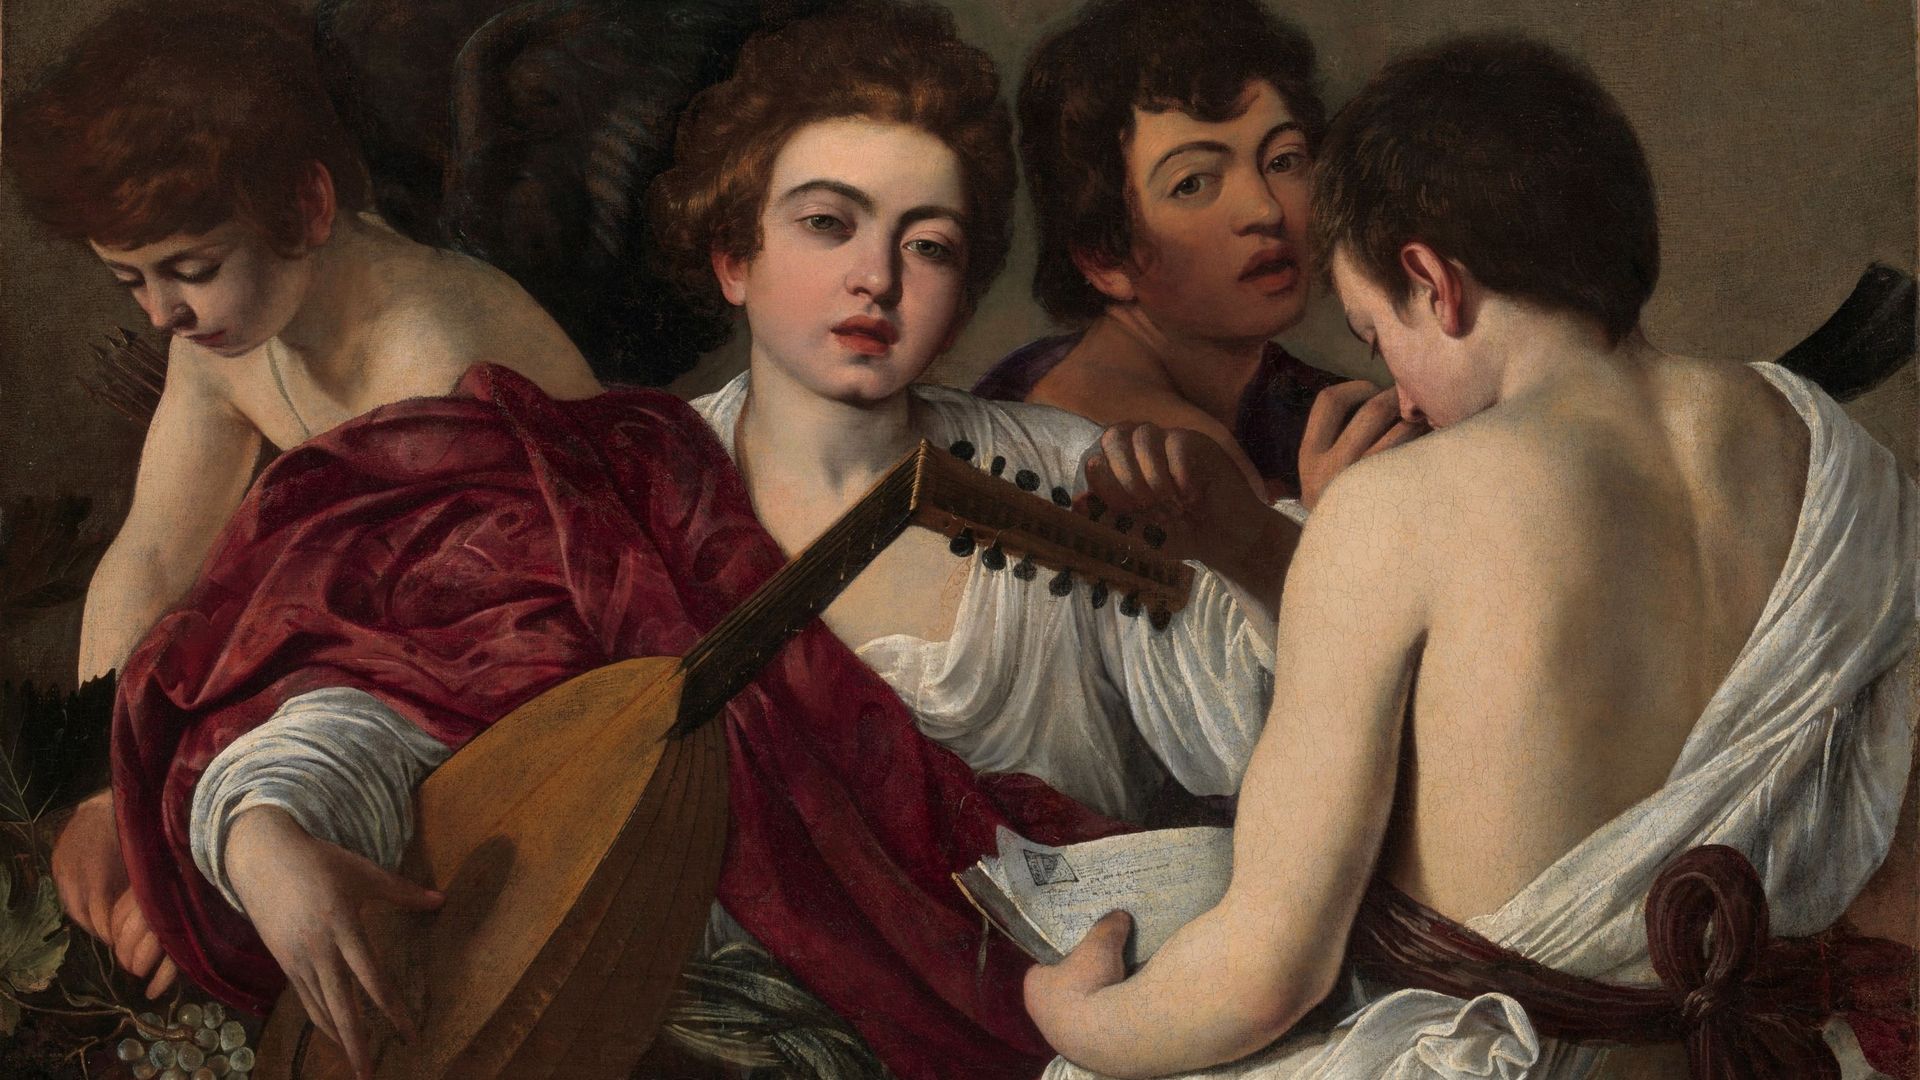 Les musiciens, du Caravage, exposés au Metropolitan Museum de New York